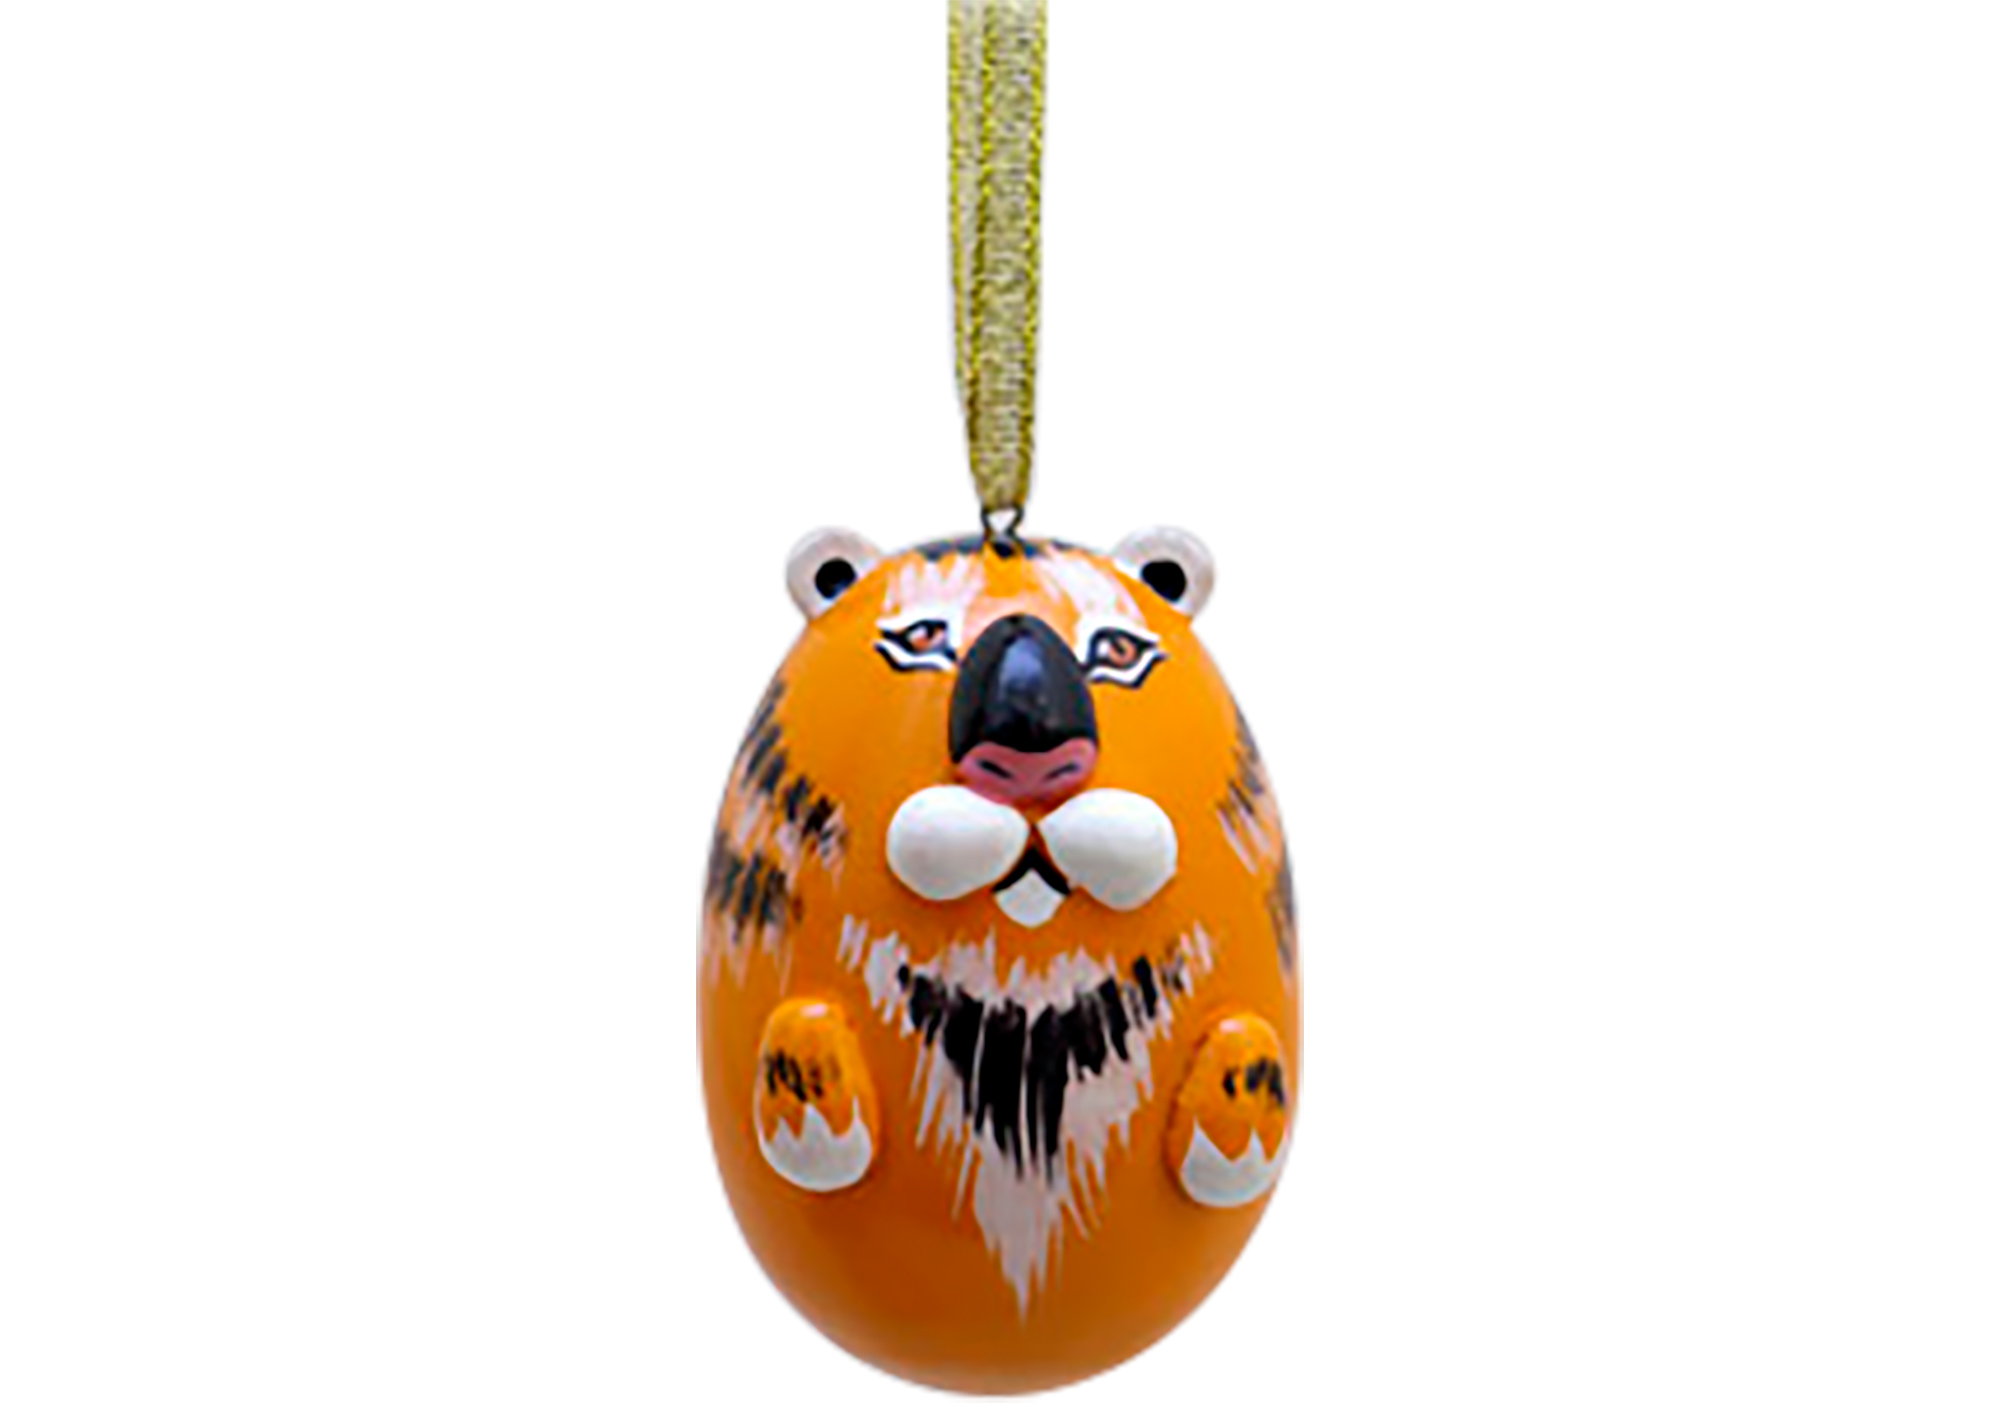 Buy Tiger Ornament, 2" at GoldenCockerel.com